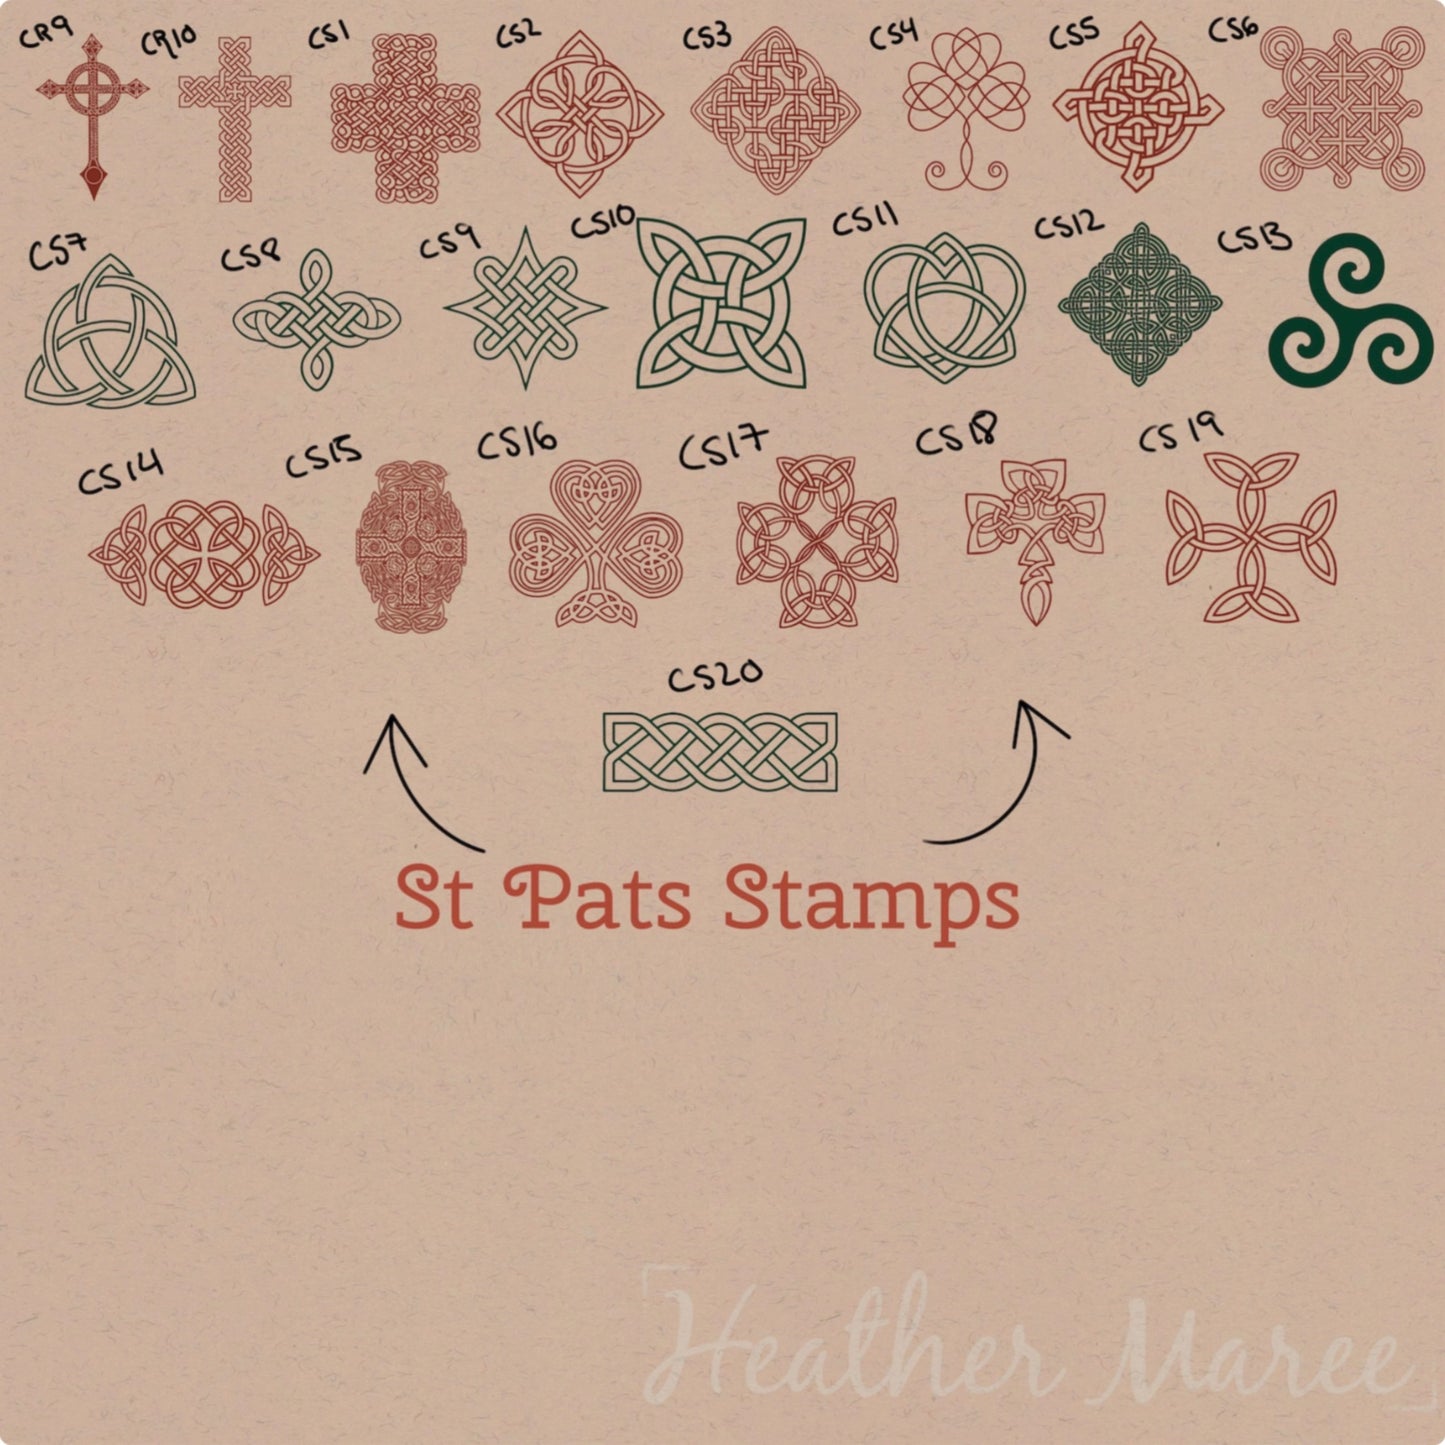 Festive Irish Procreate Stamp Brushes